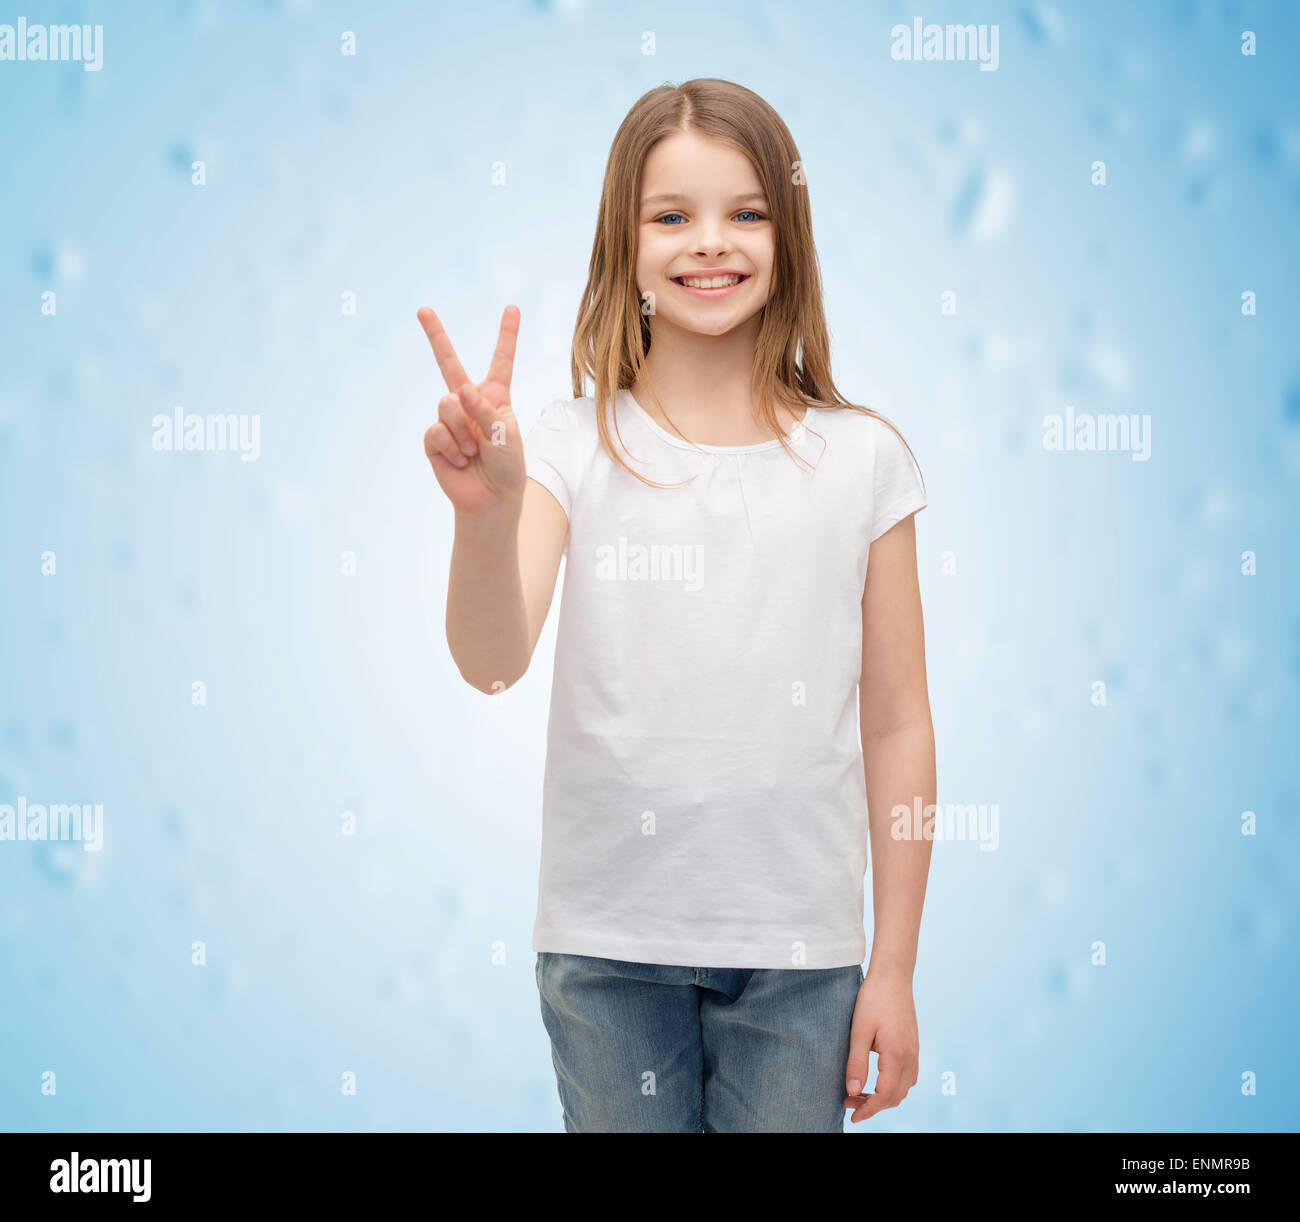 Petite fille en blanc T-shirt montrant le geste de paix Banque D'Images